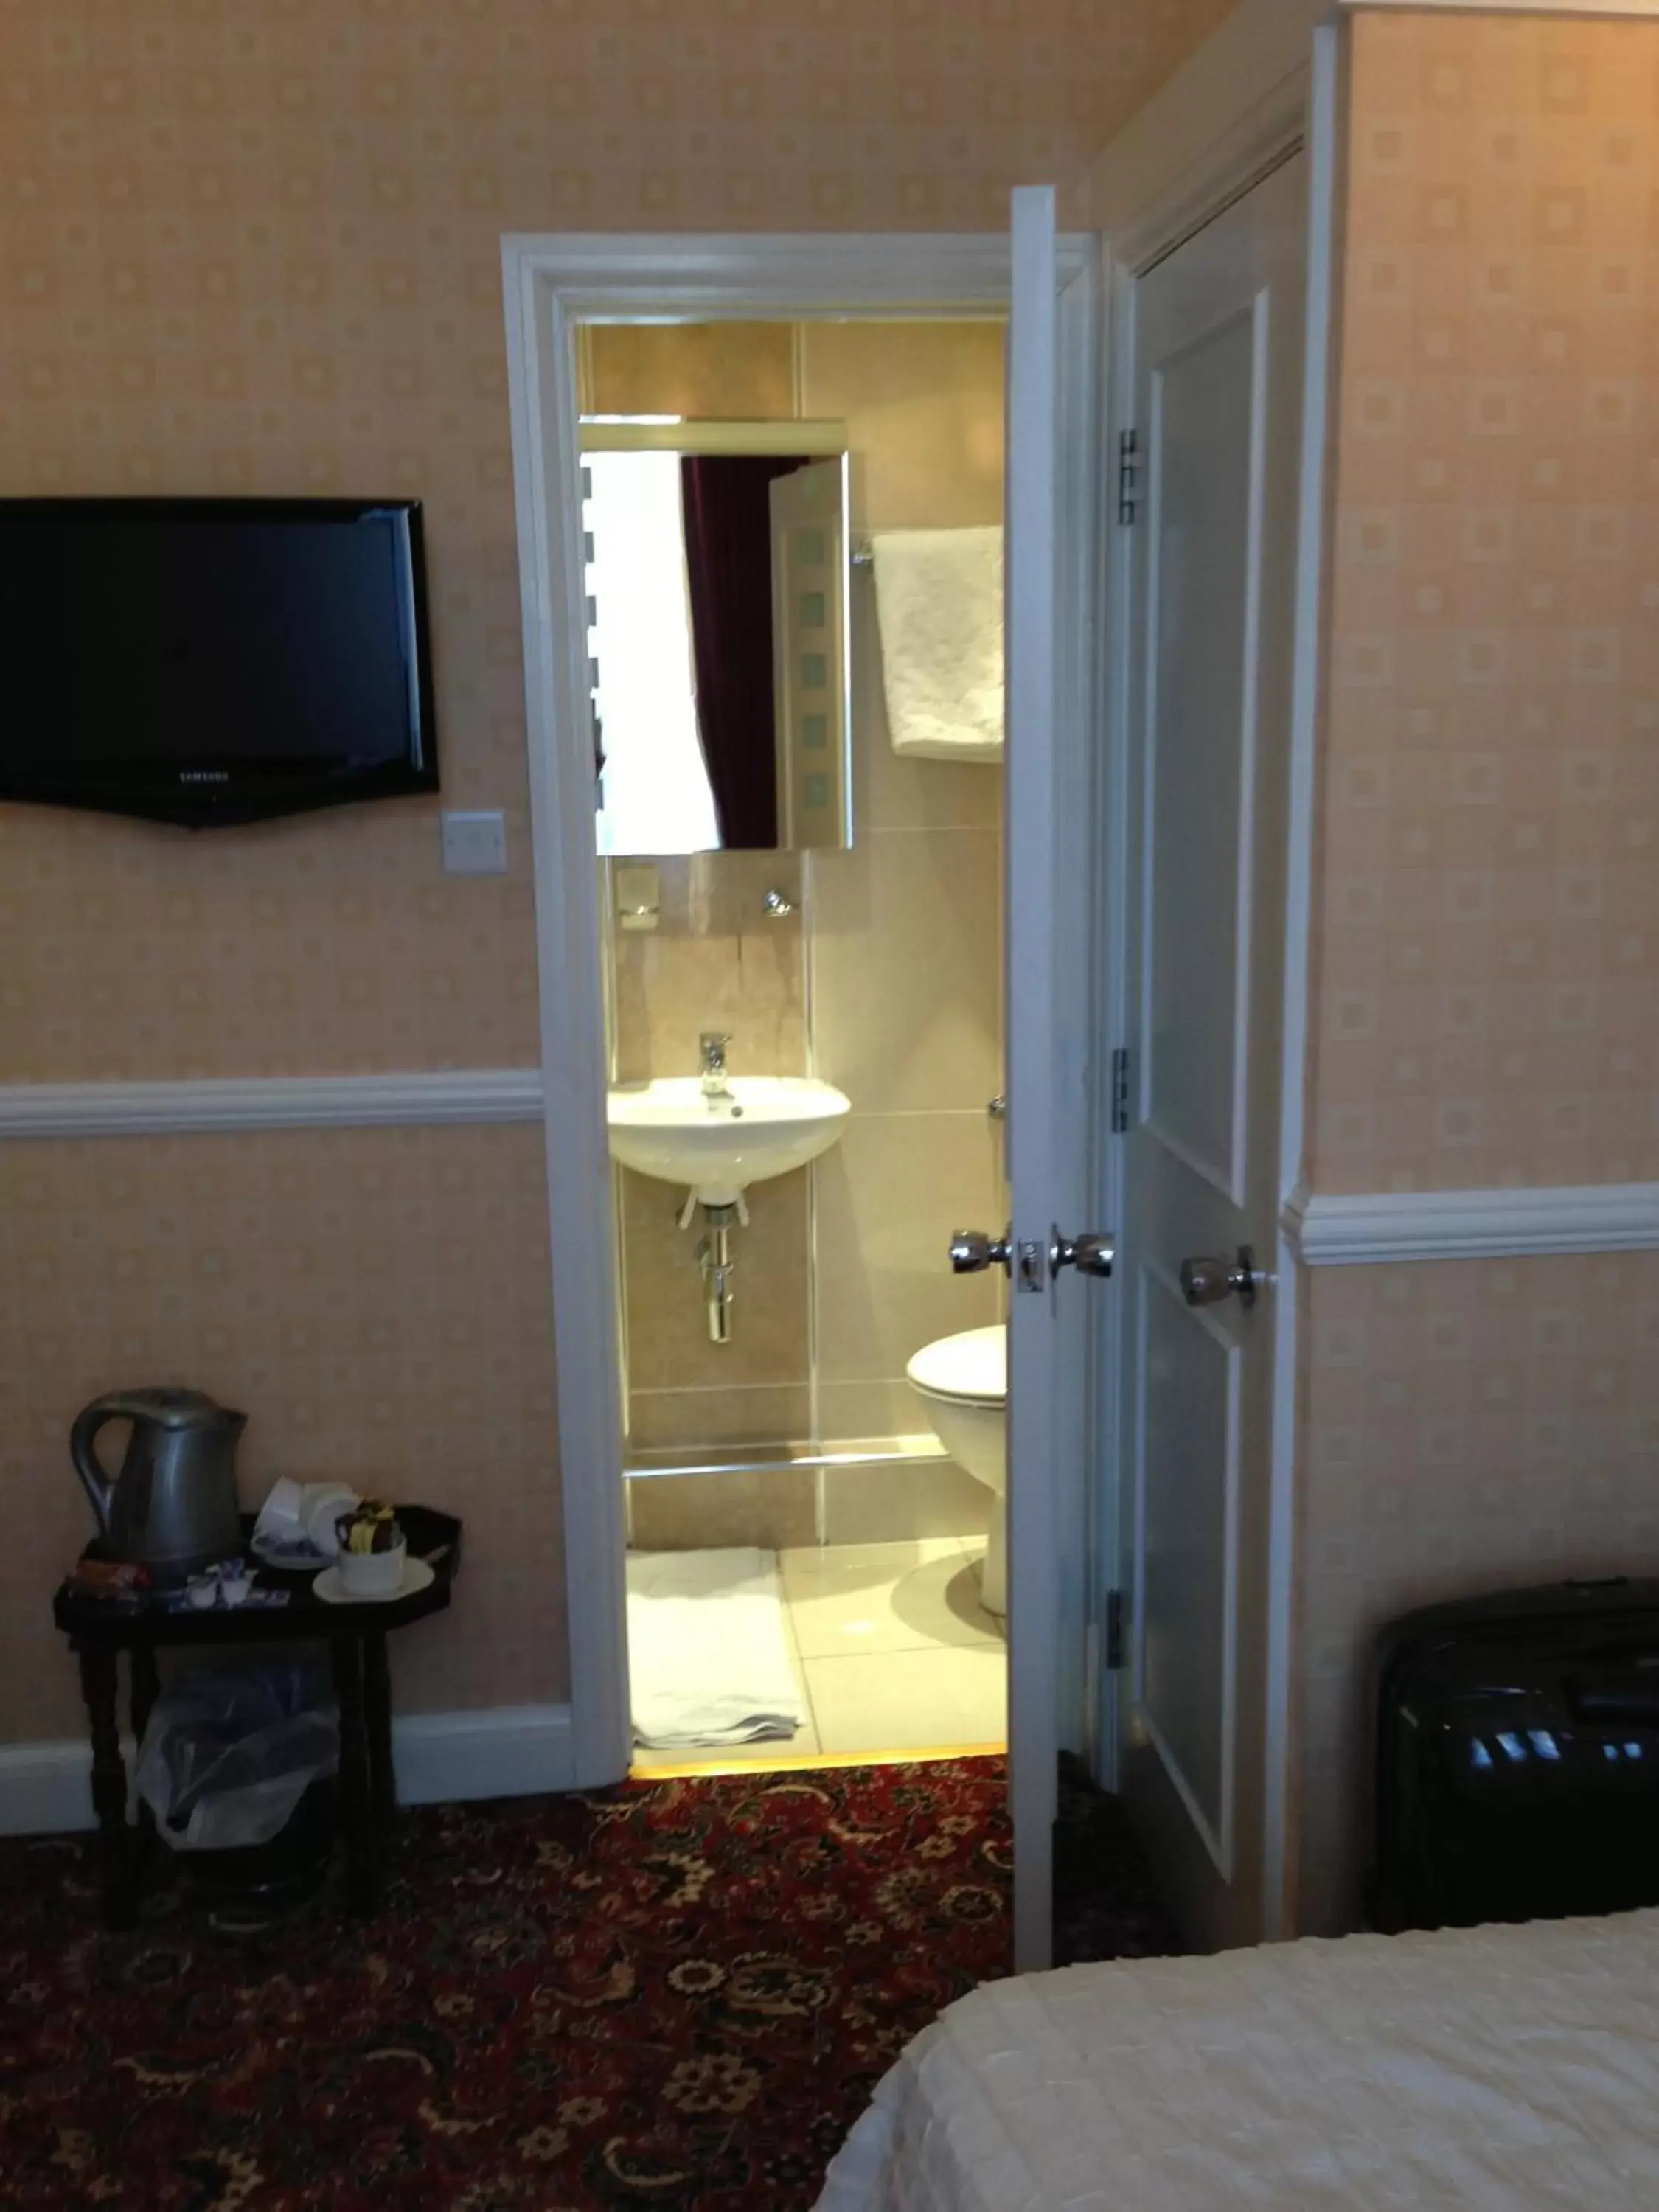 Bathroom, TV/Entertainment Center in Balmoral House Hotel